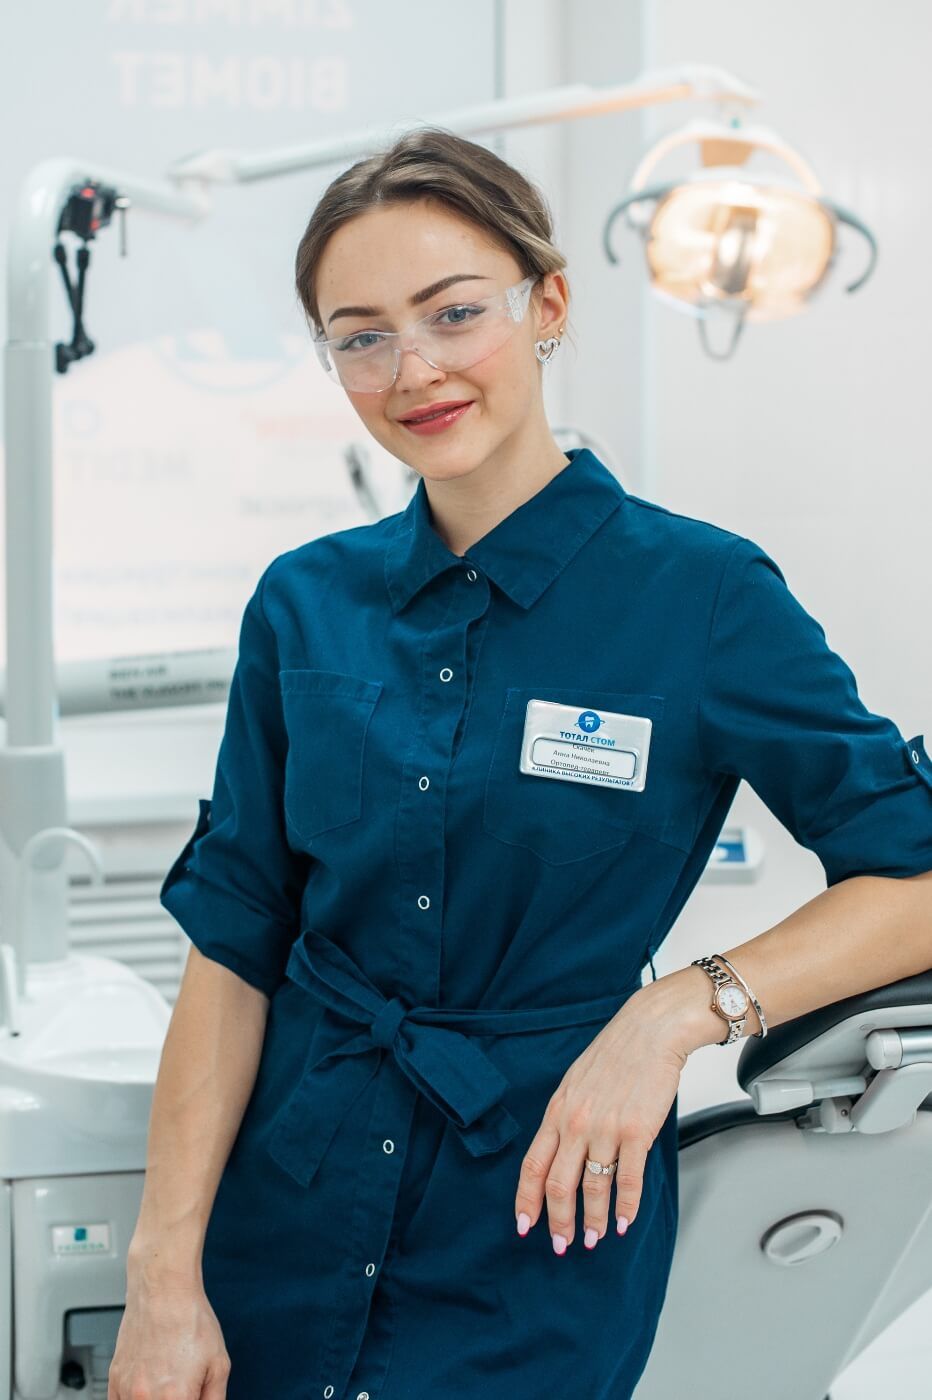 Скачек Анна Николаевна стоматолог-ортопед